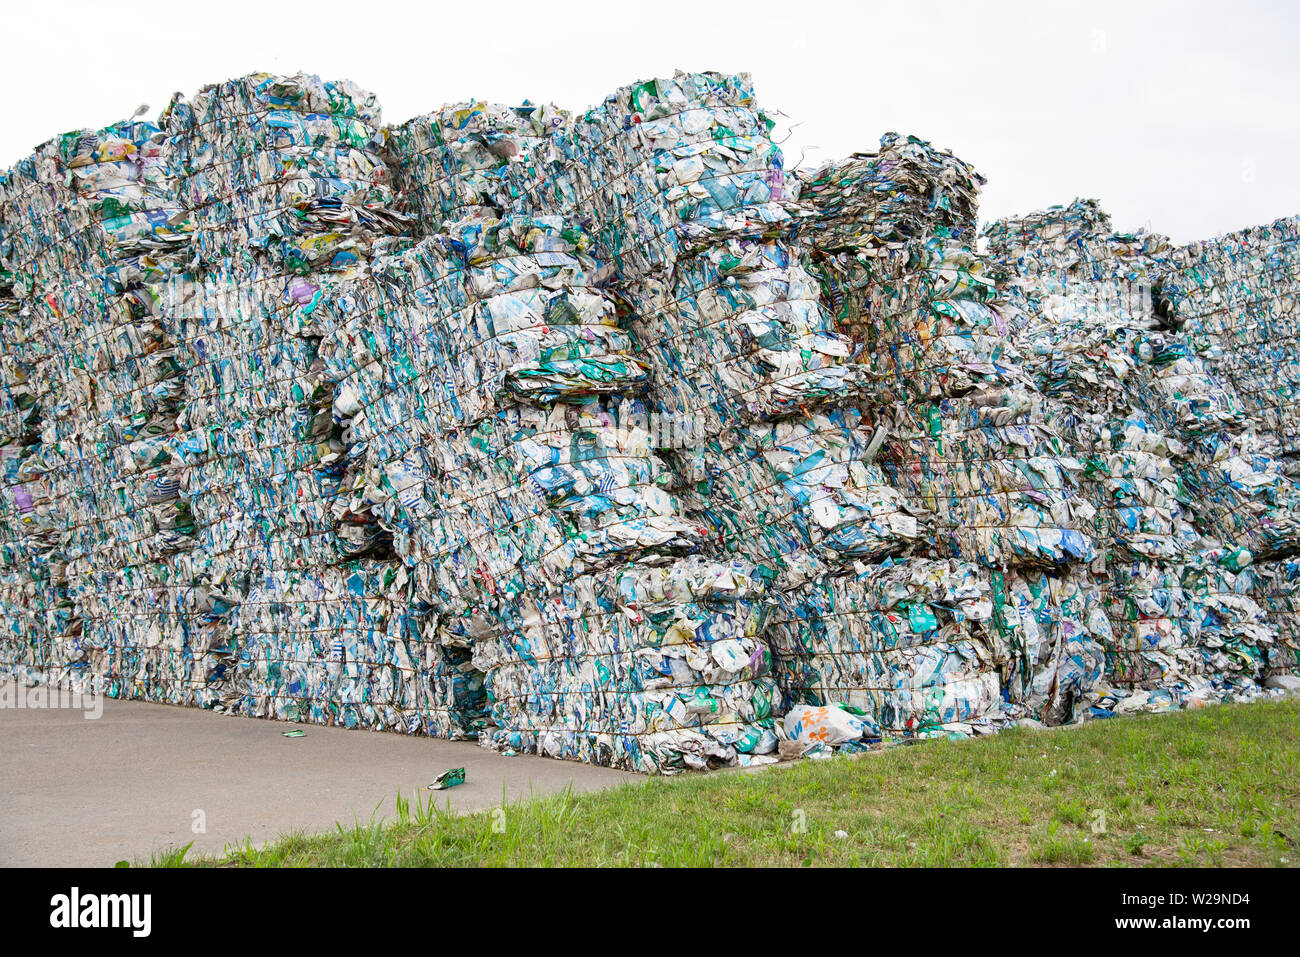 Minsk, Weißrussland - Juni 6, 2019 Haufen gedrückt Dosen tetrapack bei einer Garbage Collection. Stockfoto